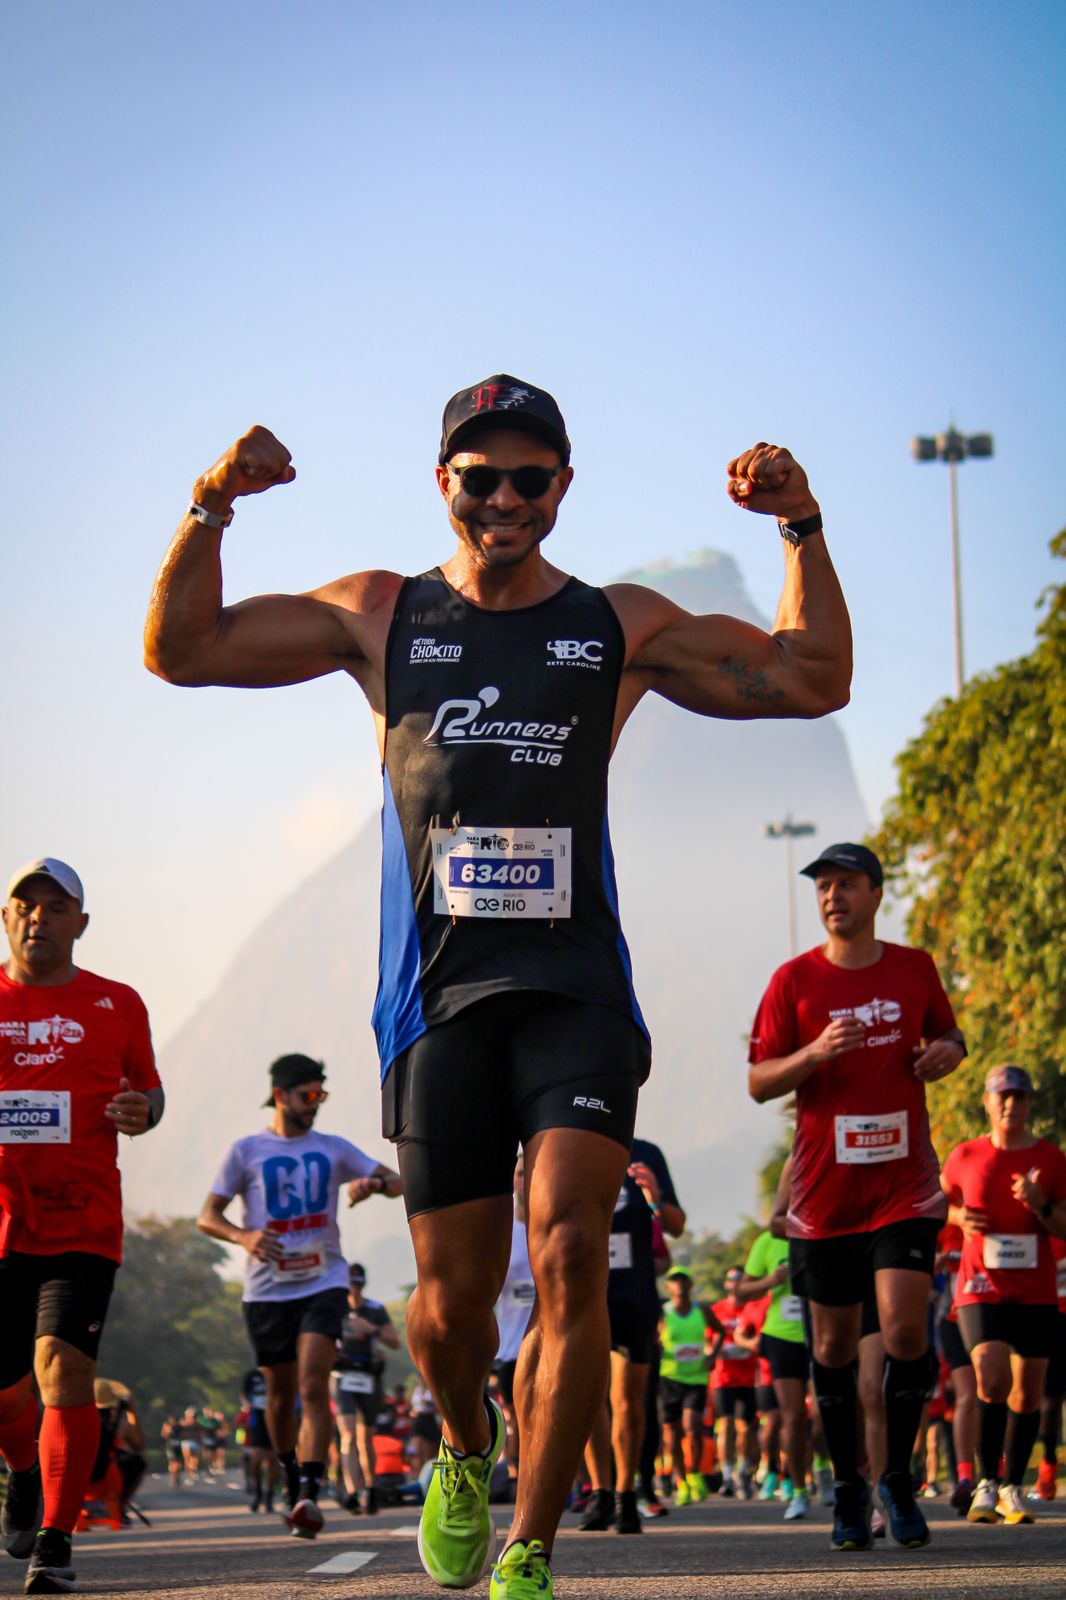 Clube de corrida de Salvador representará a Bahia na Maratona do Rio com 300 atletas